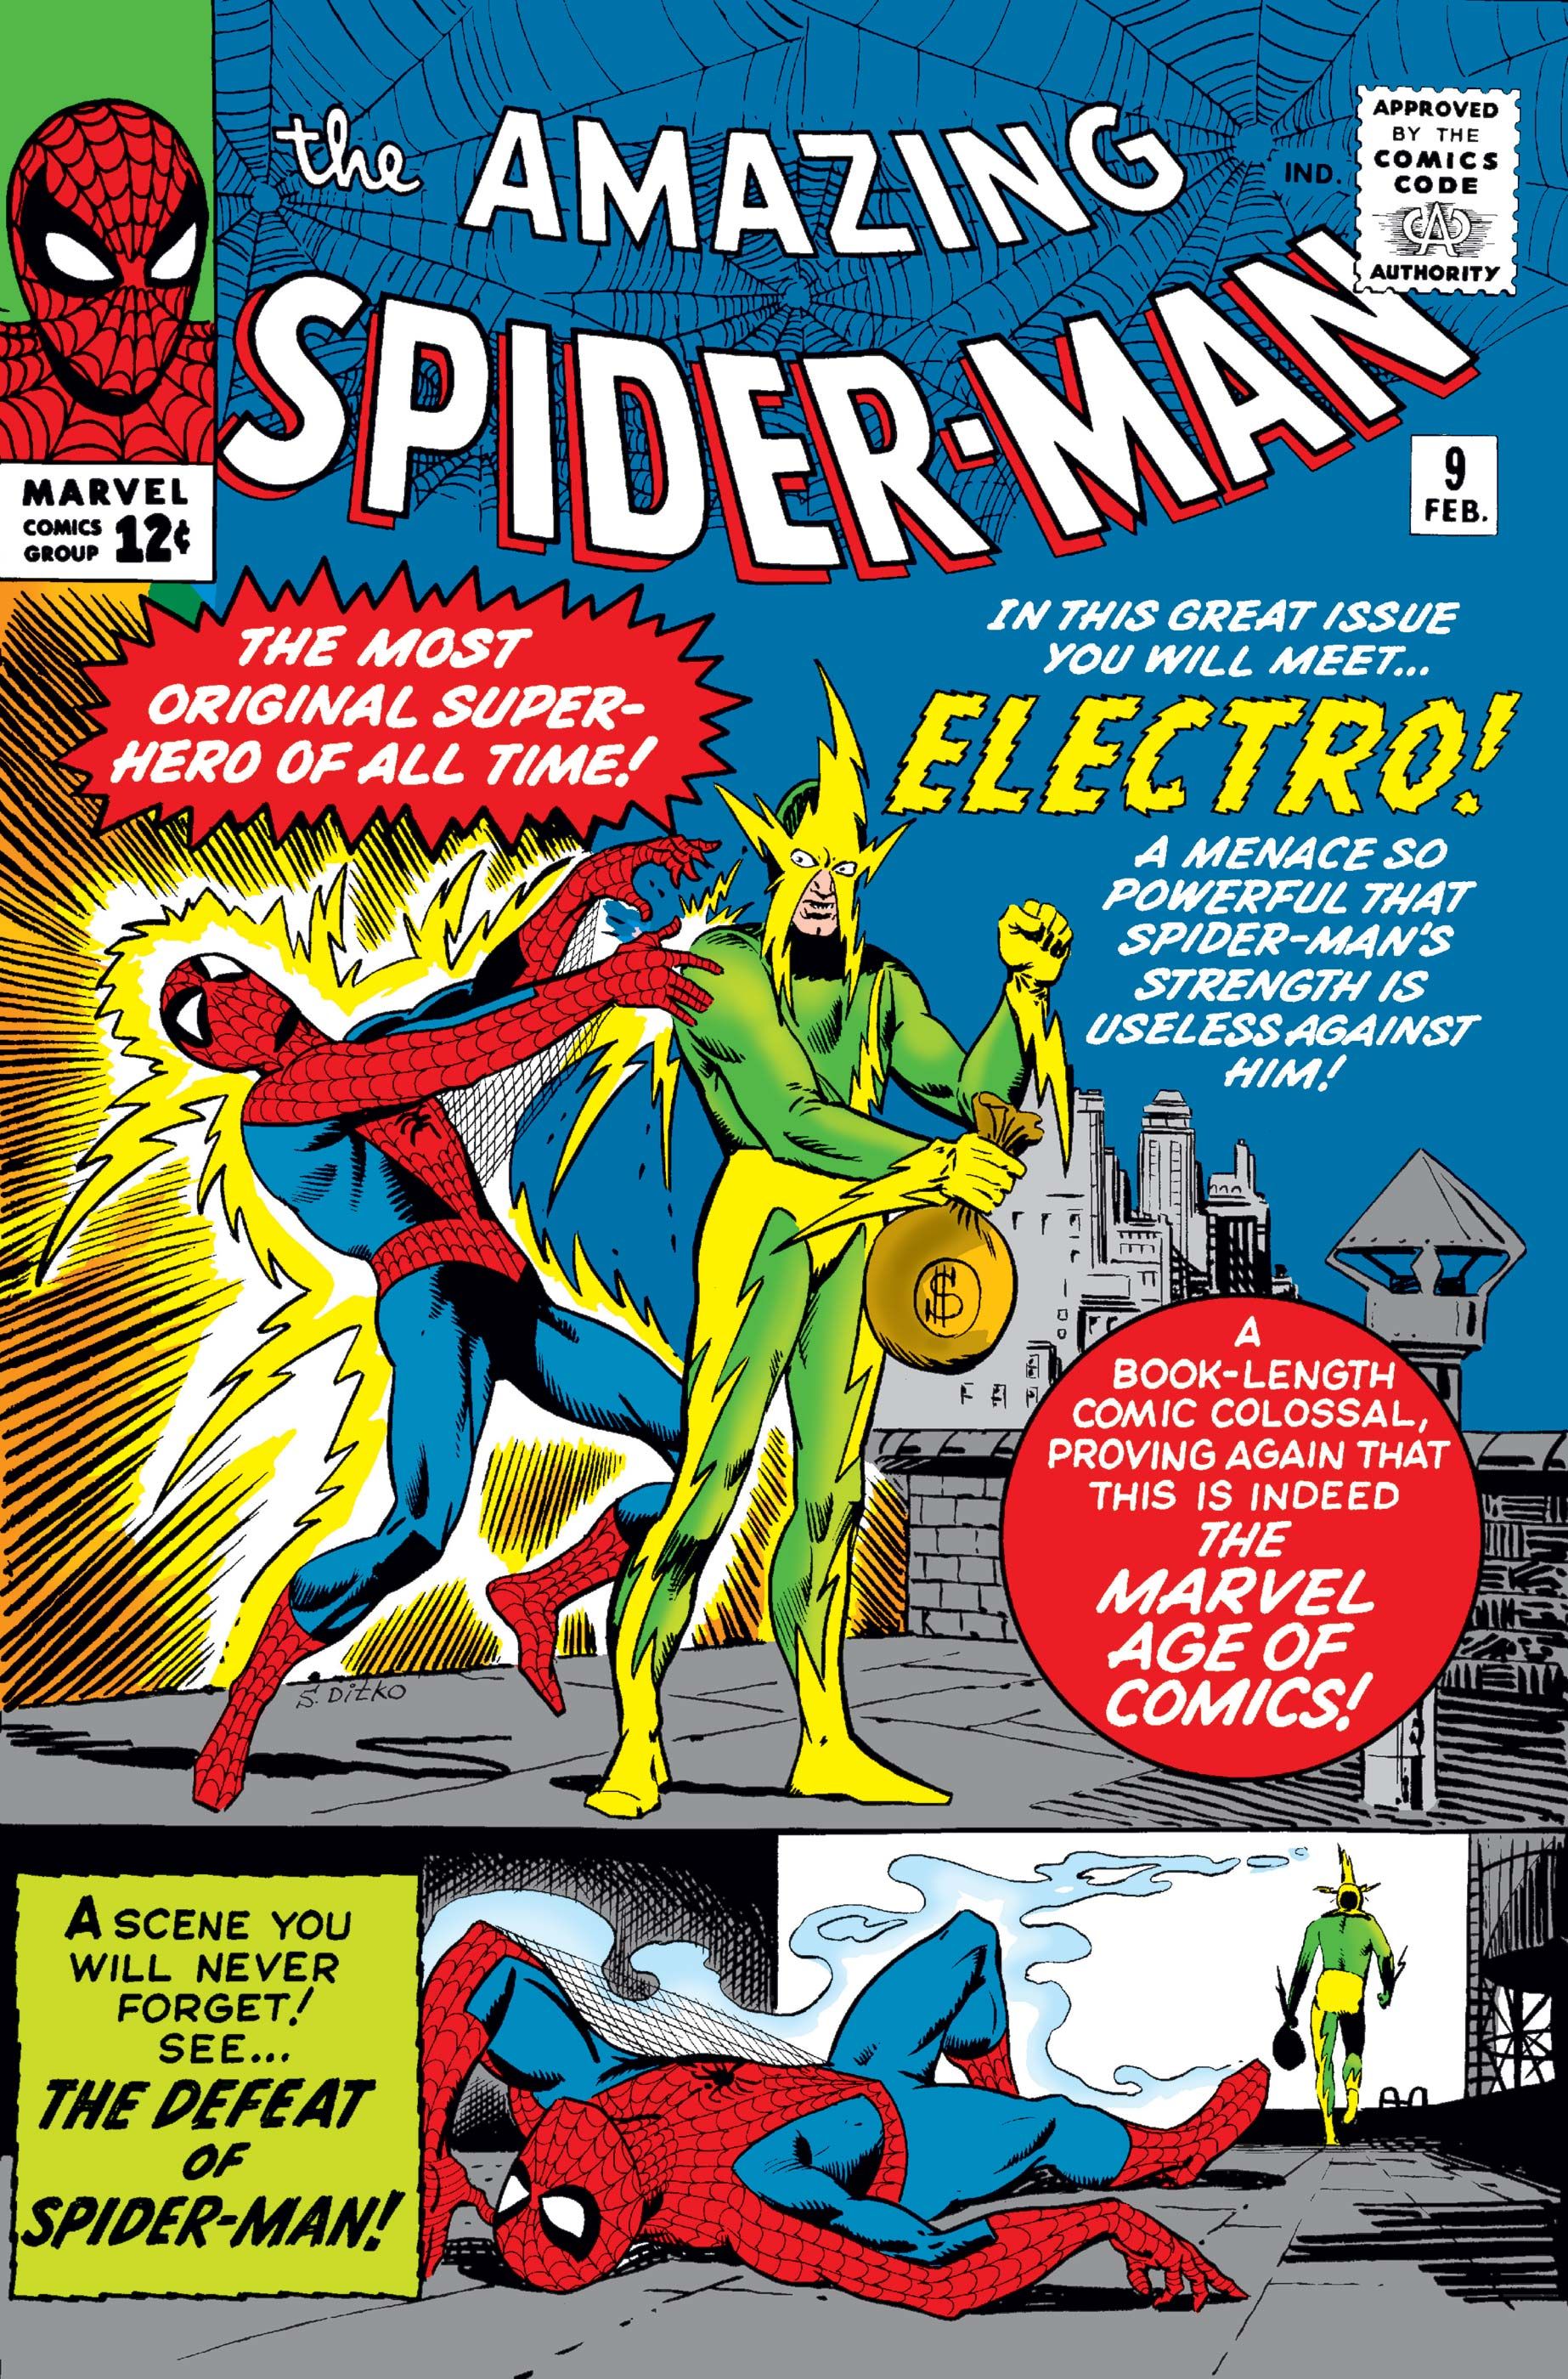 Amazing Spider-man 9 capa do homem-aranha lutando eletro